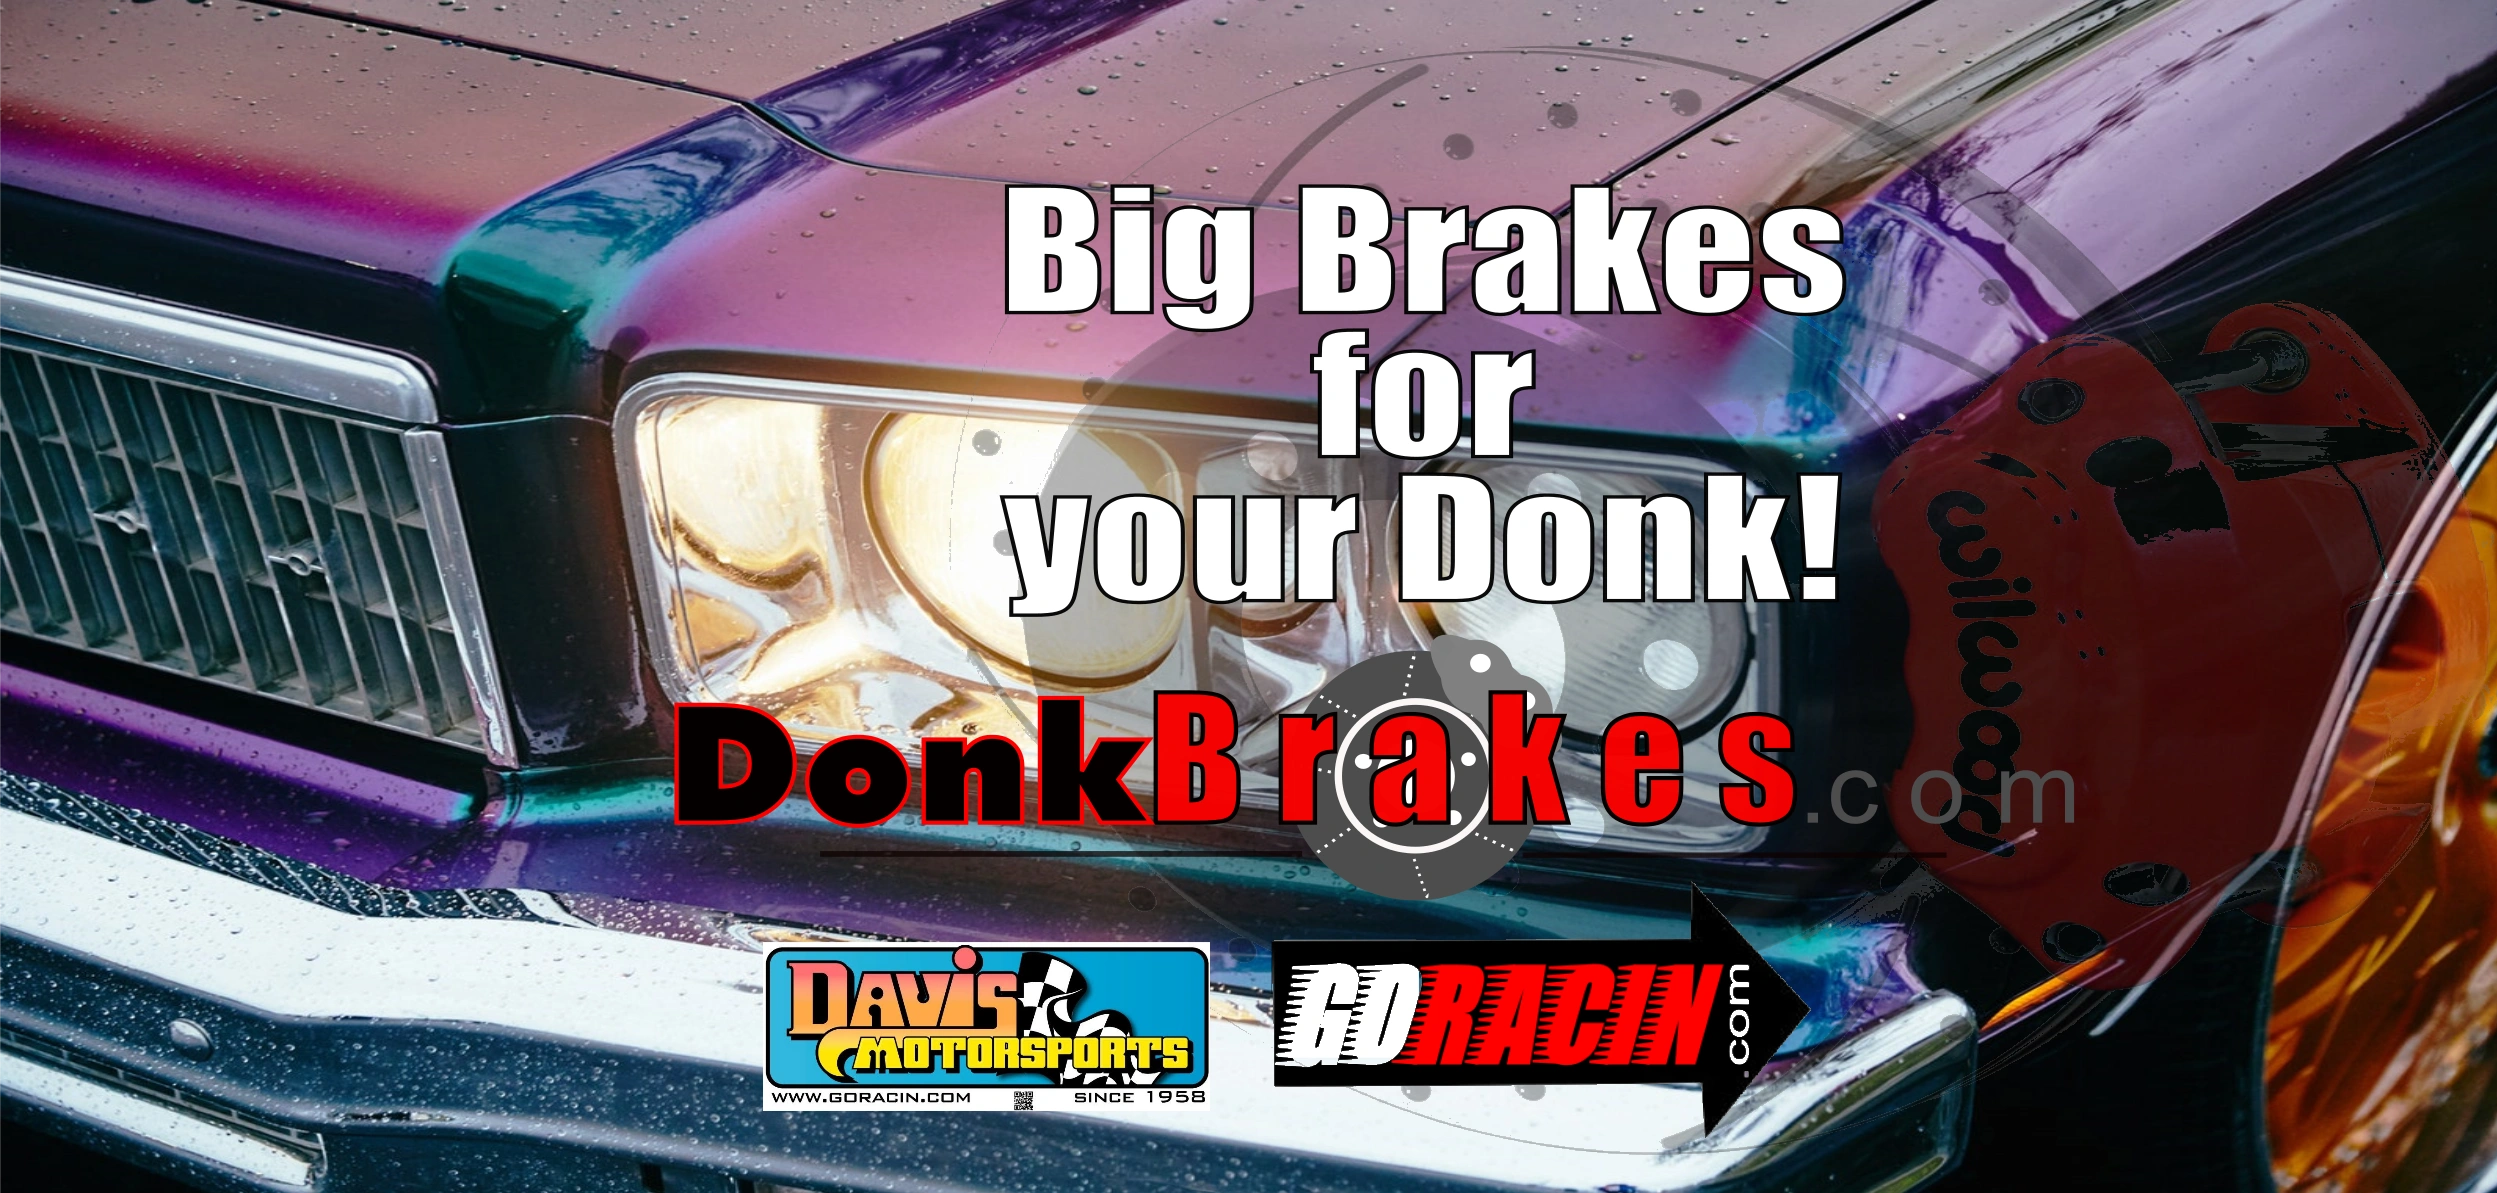 DonkBrakes.com